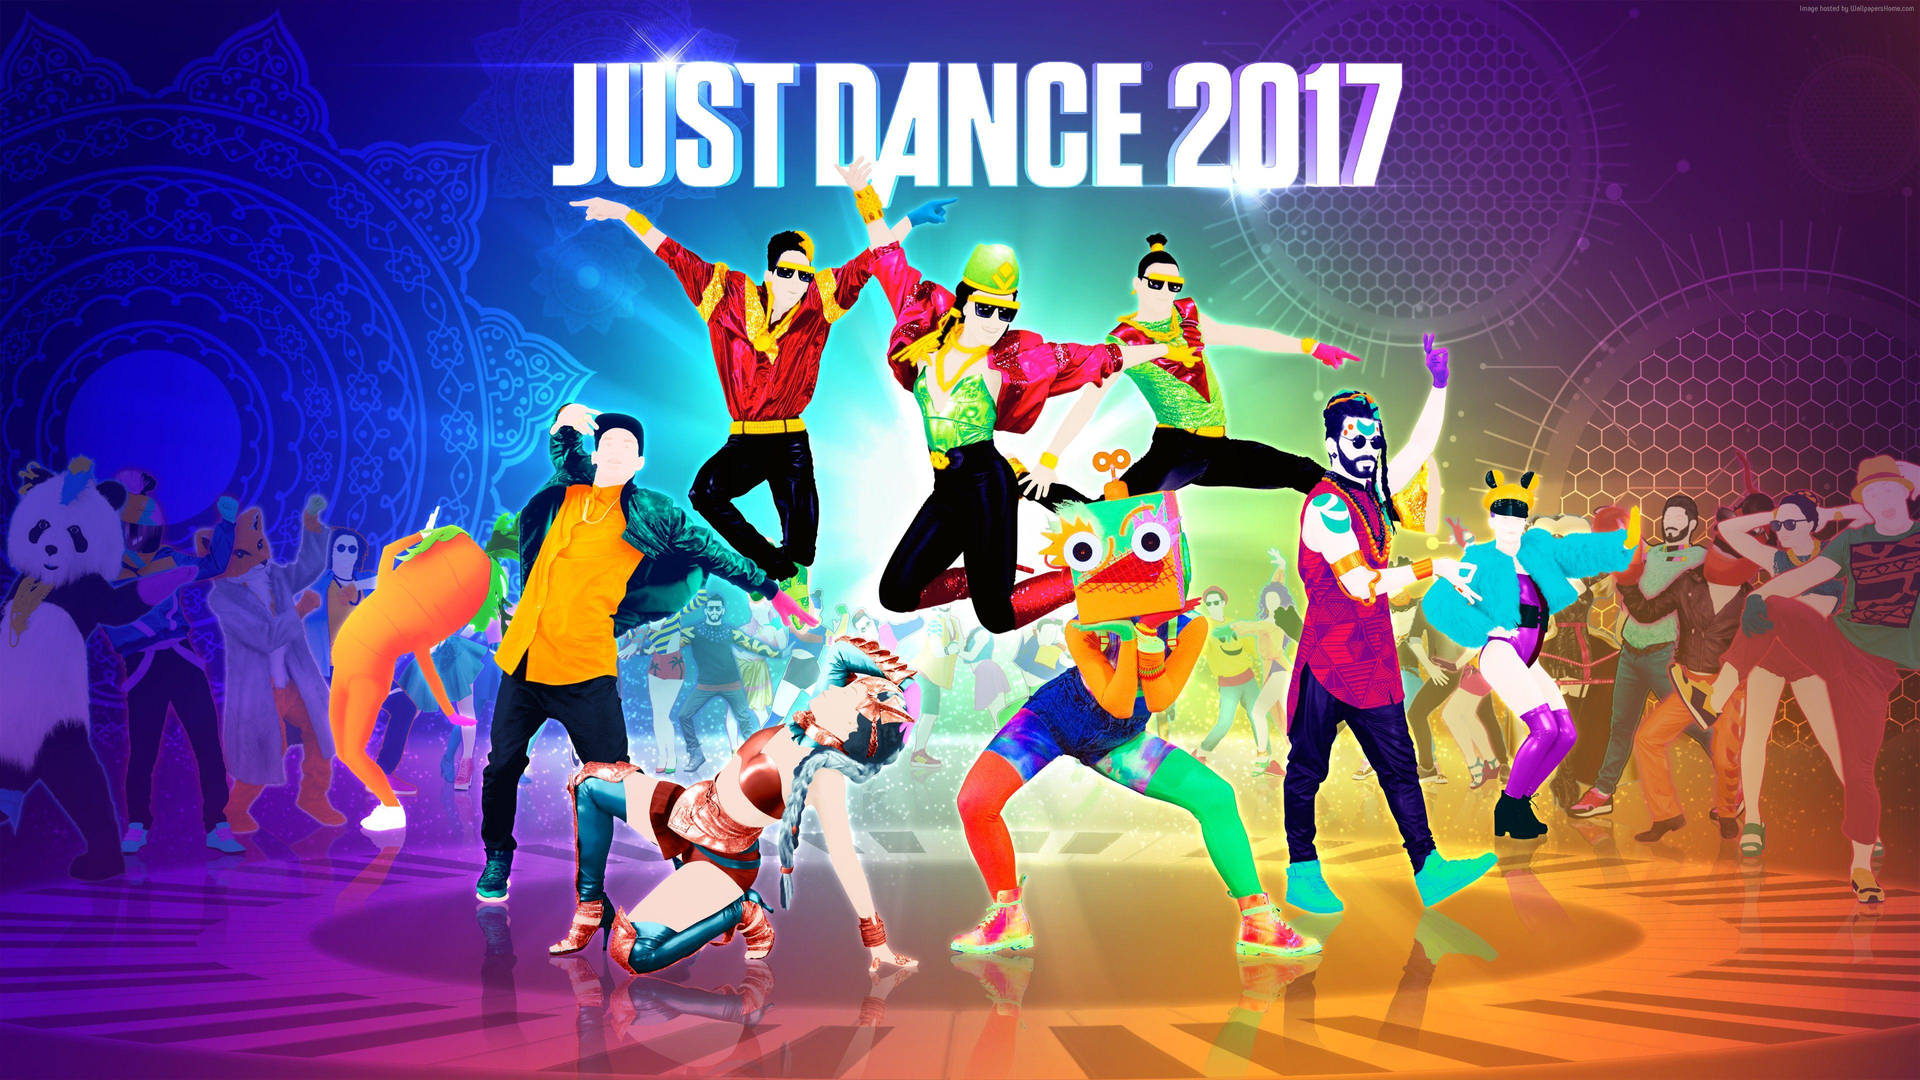 Just Dance 2017 Dancers On Piano Floor Background